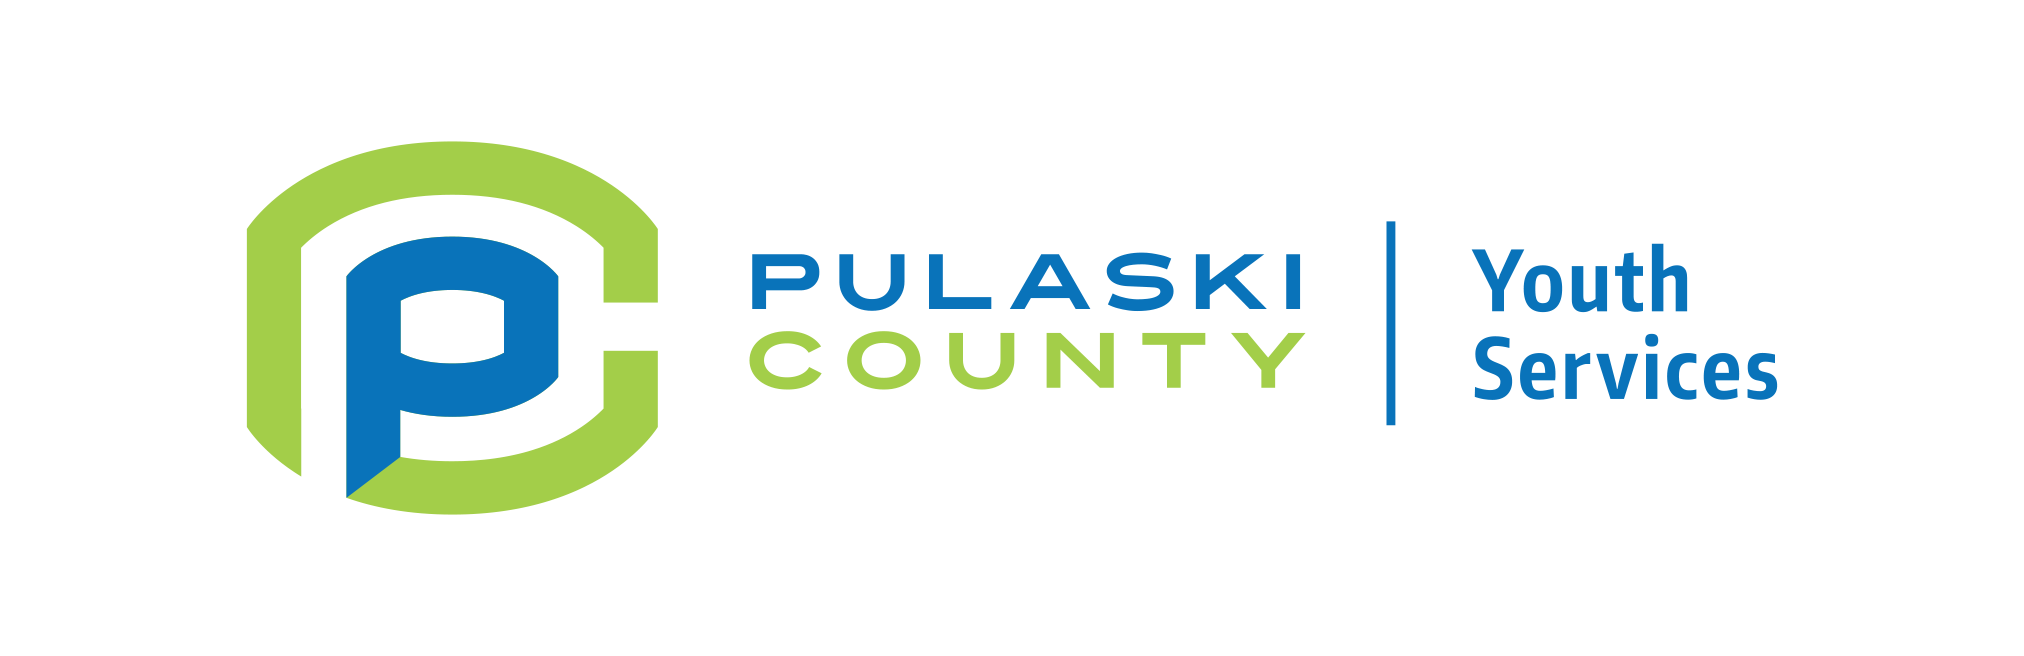 pulaskicounty.net logo